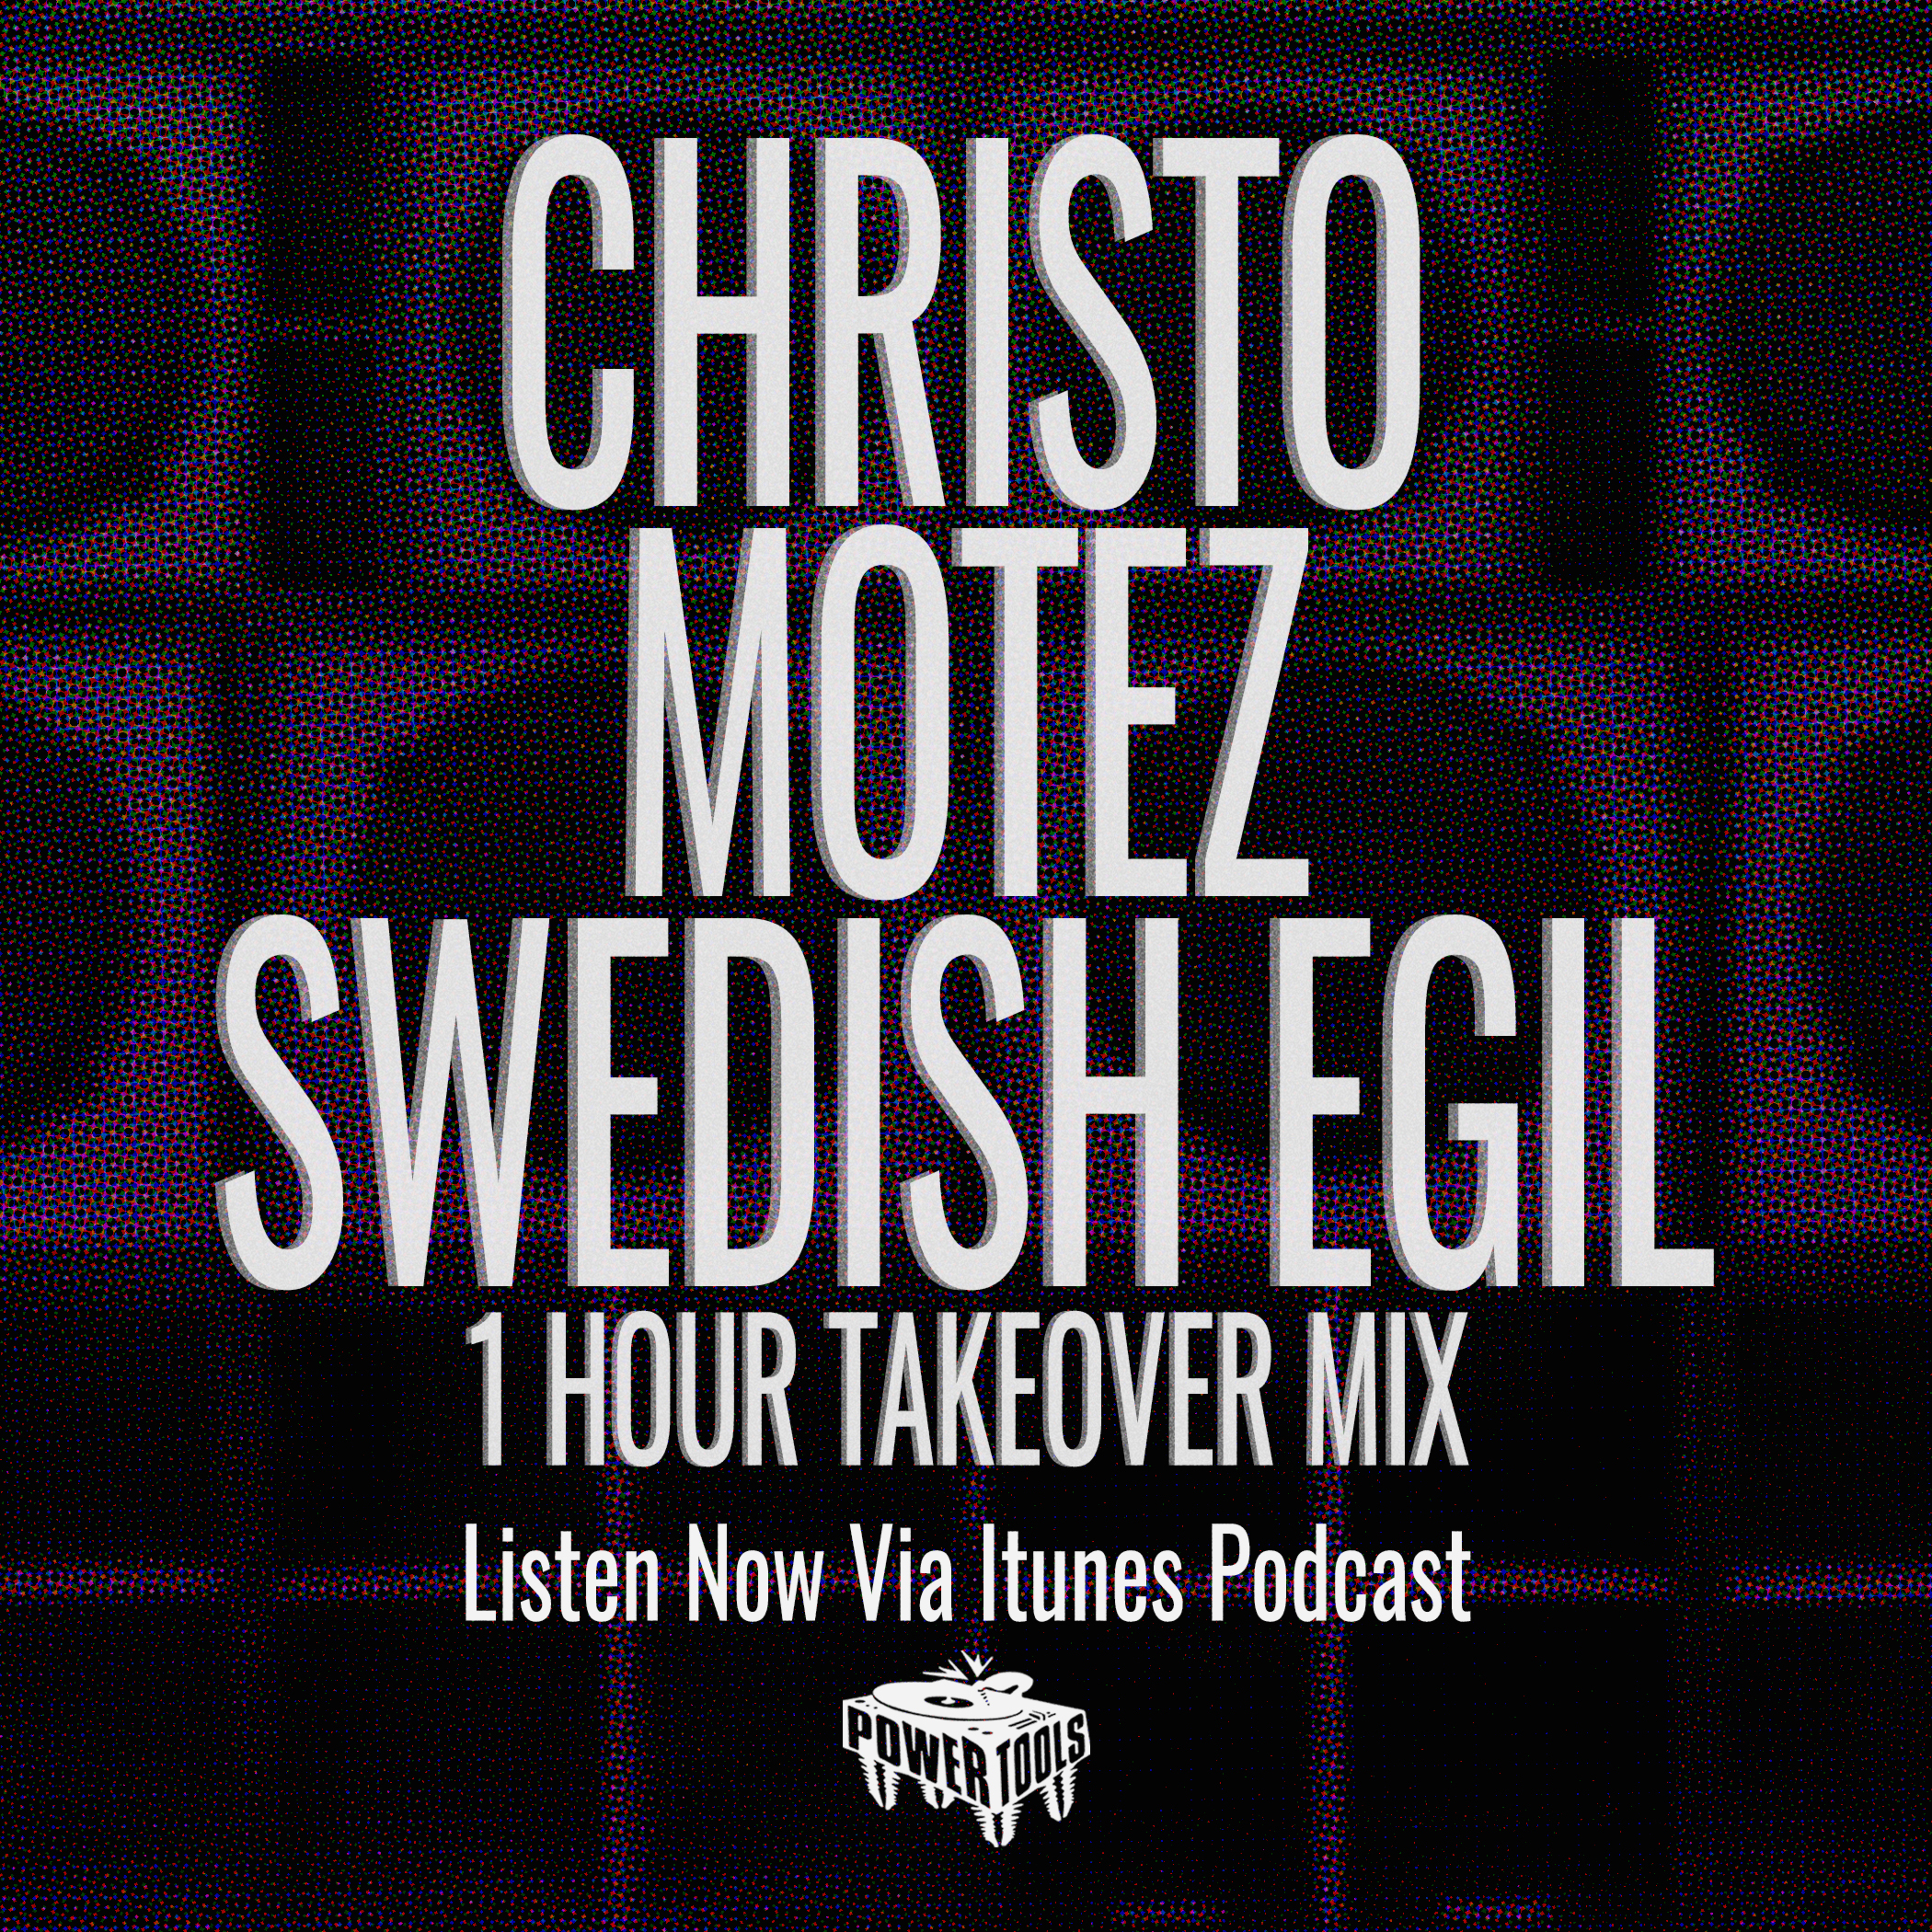 Episode 6-5-21 Ft: Christo, Motez, & Swedish Egil (1 Hour Mix)